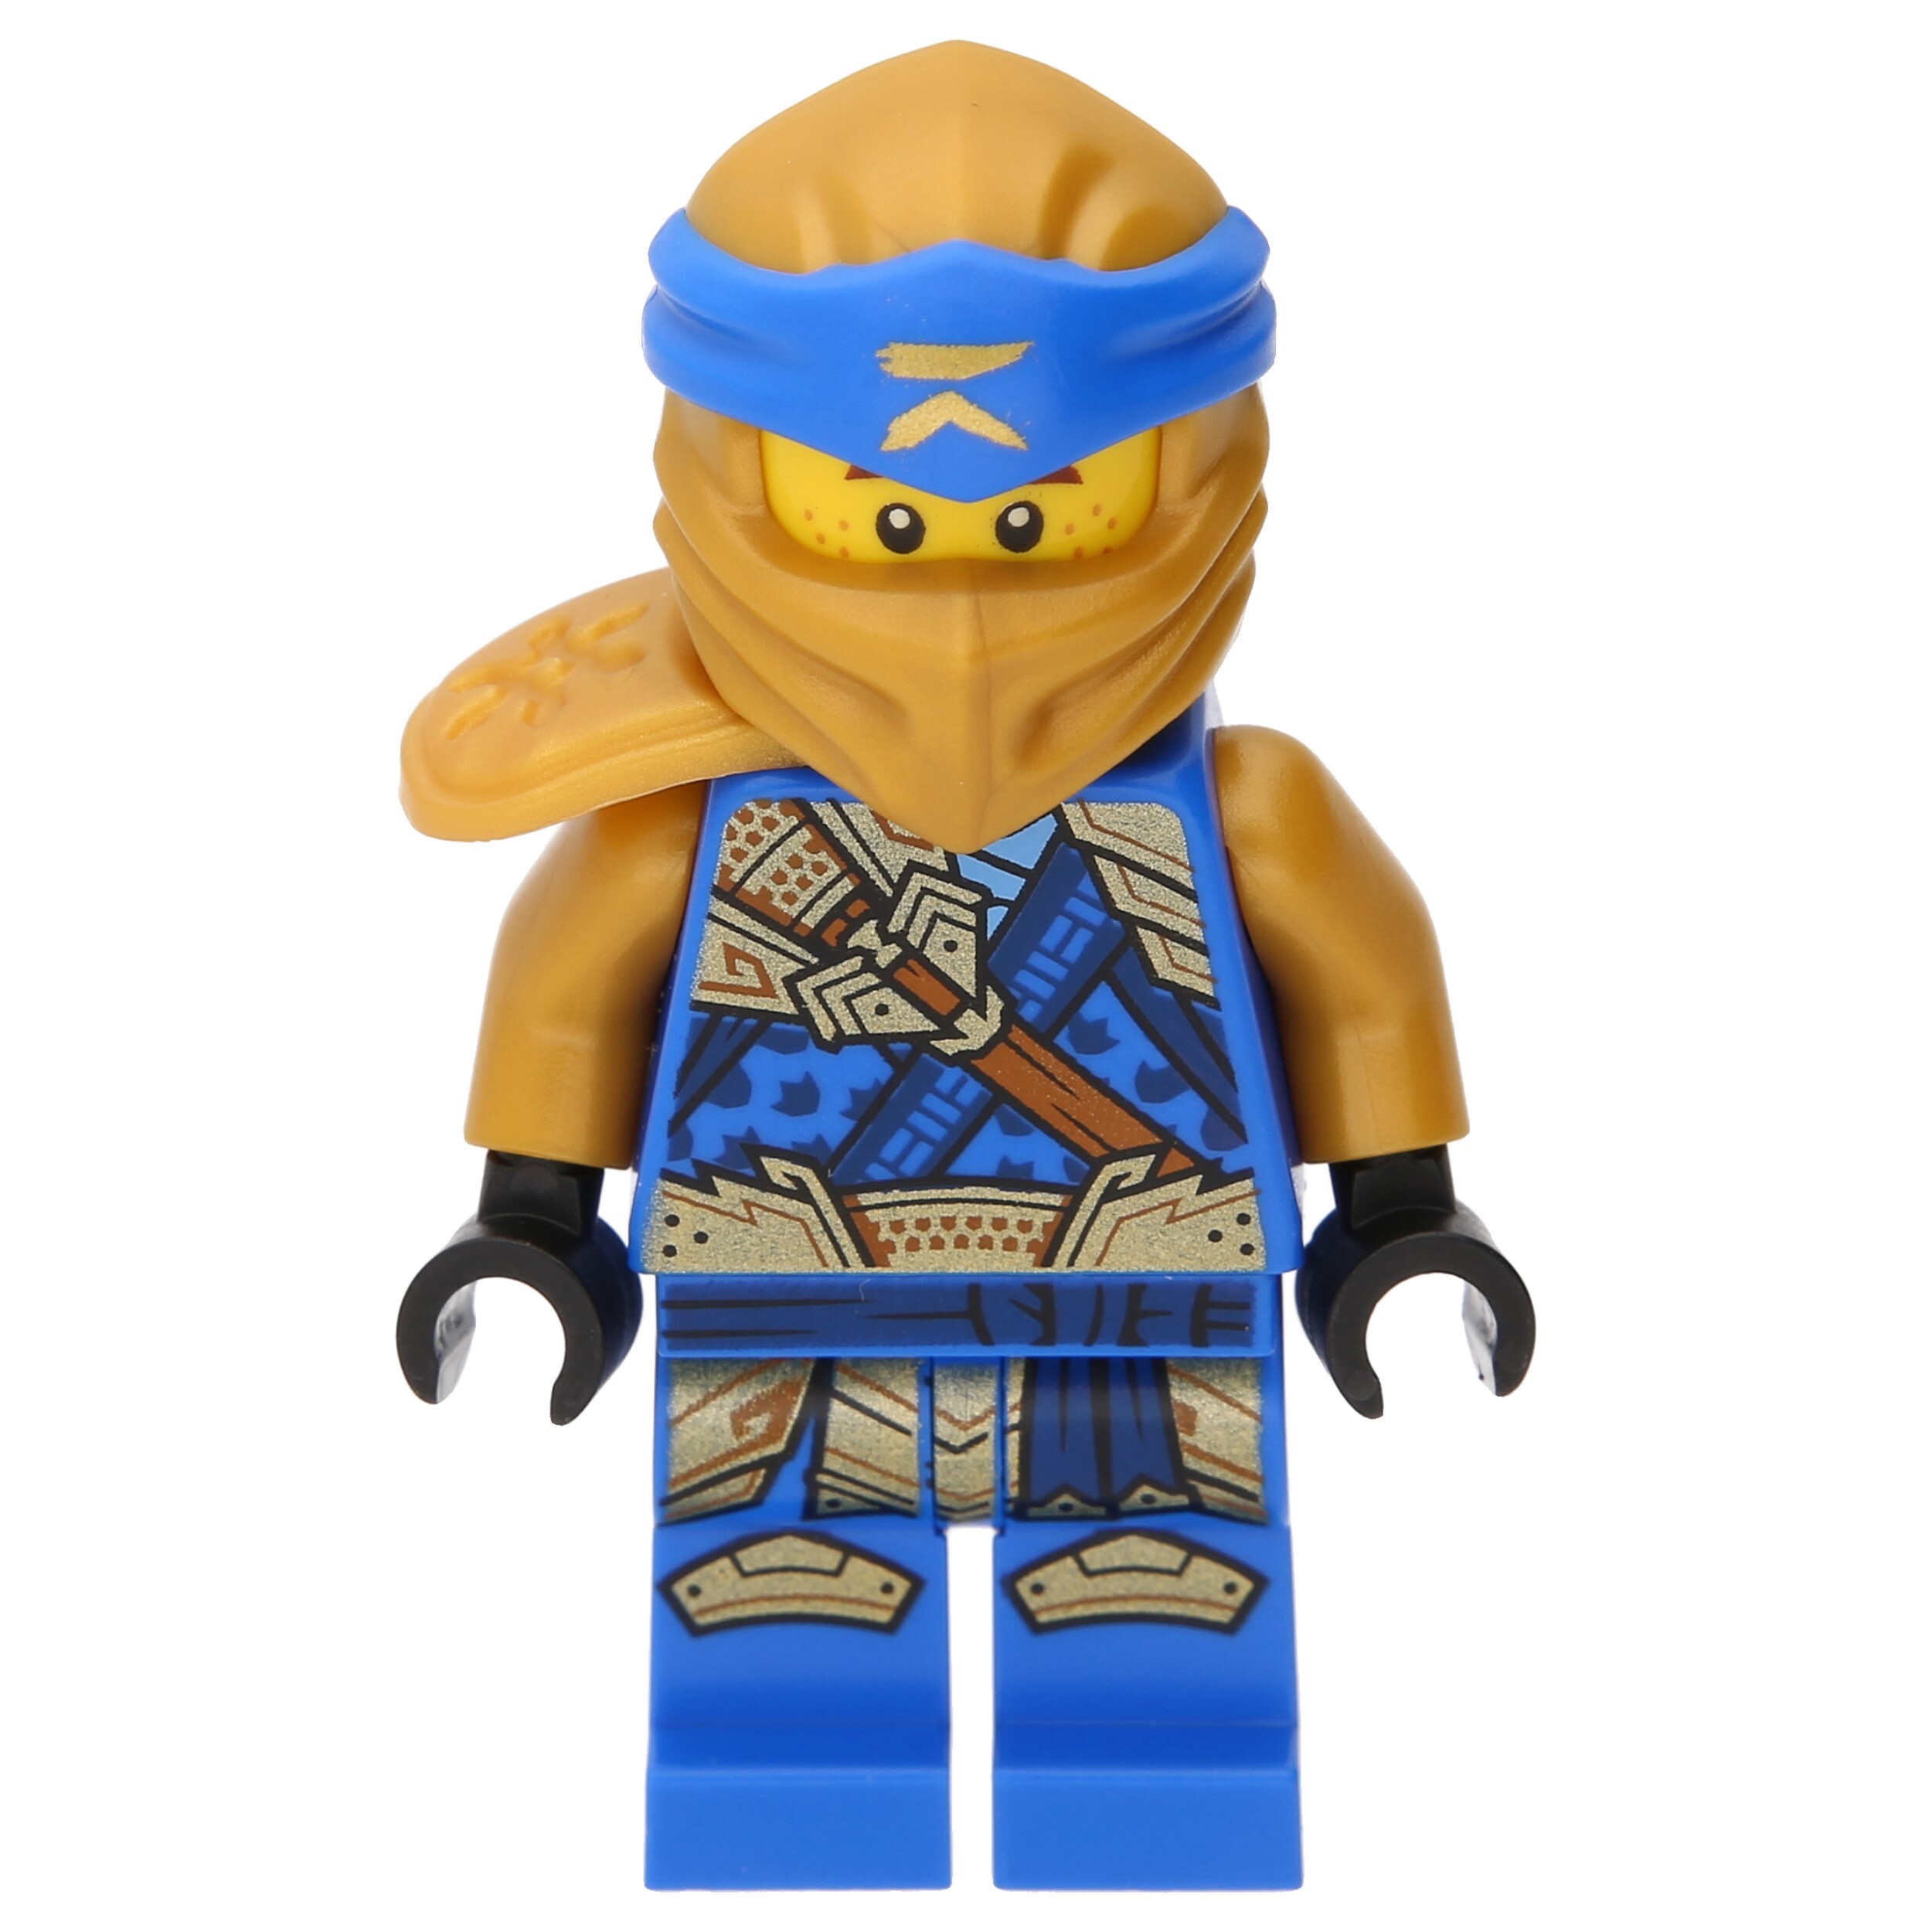 LEGO Ninjago: Jay (Golden Ninja)